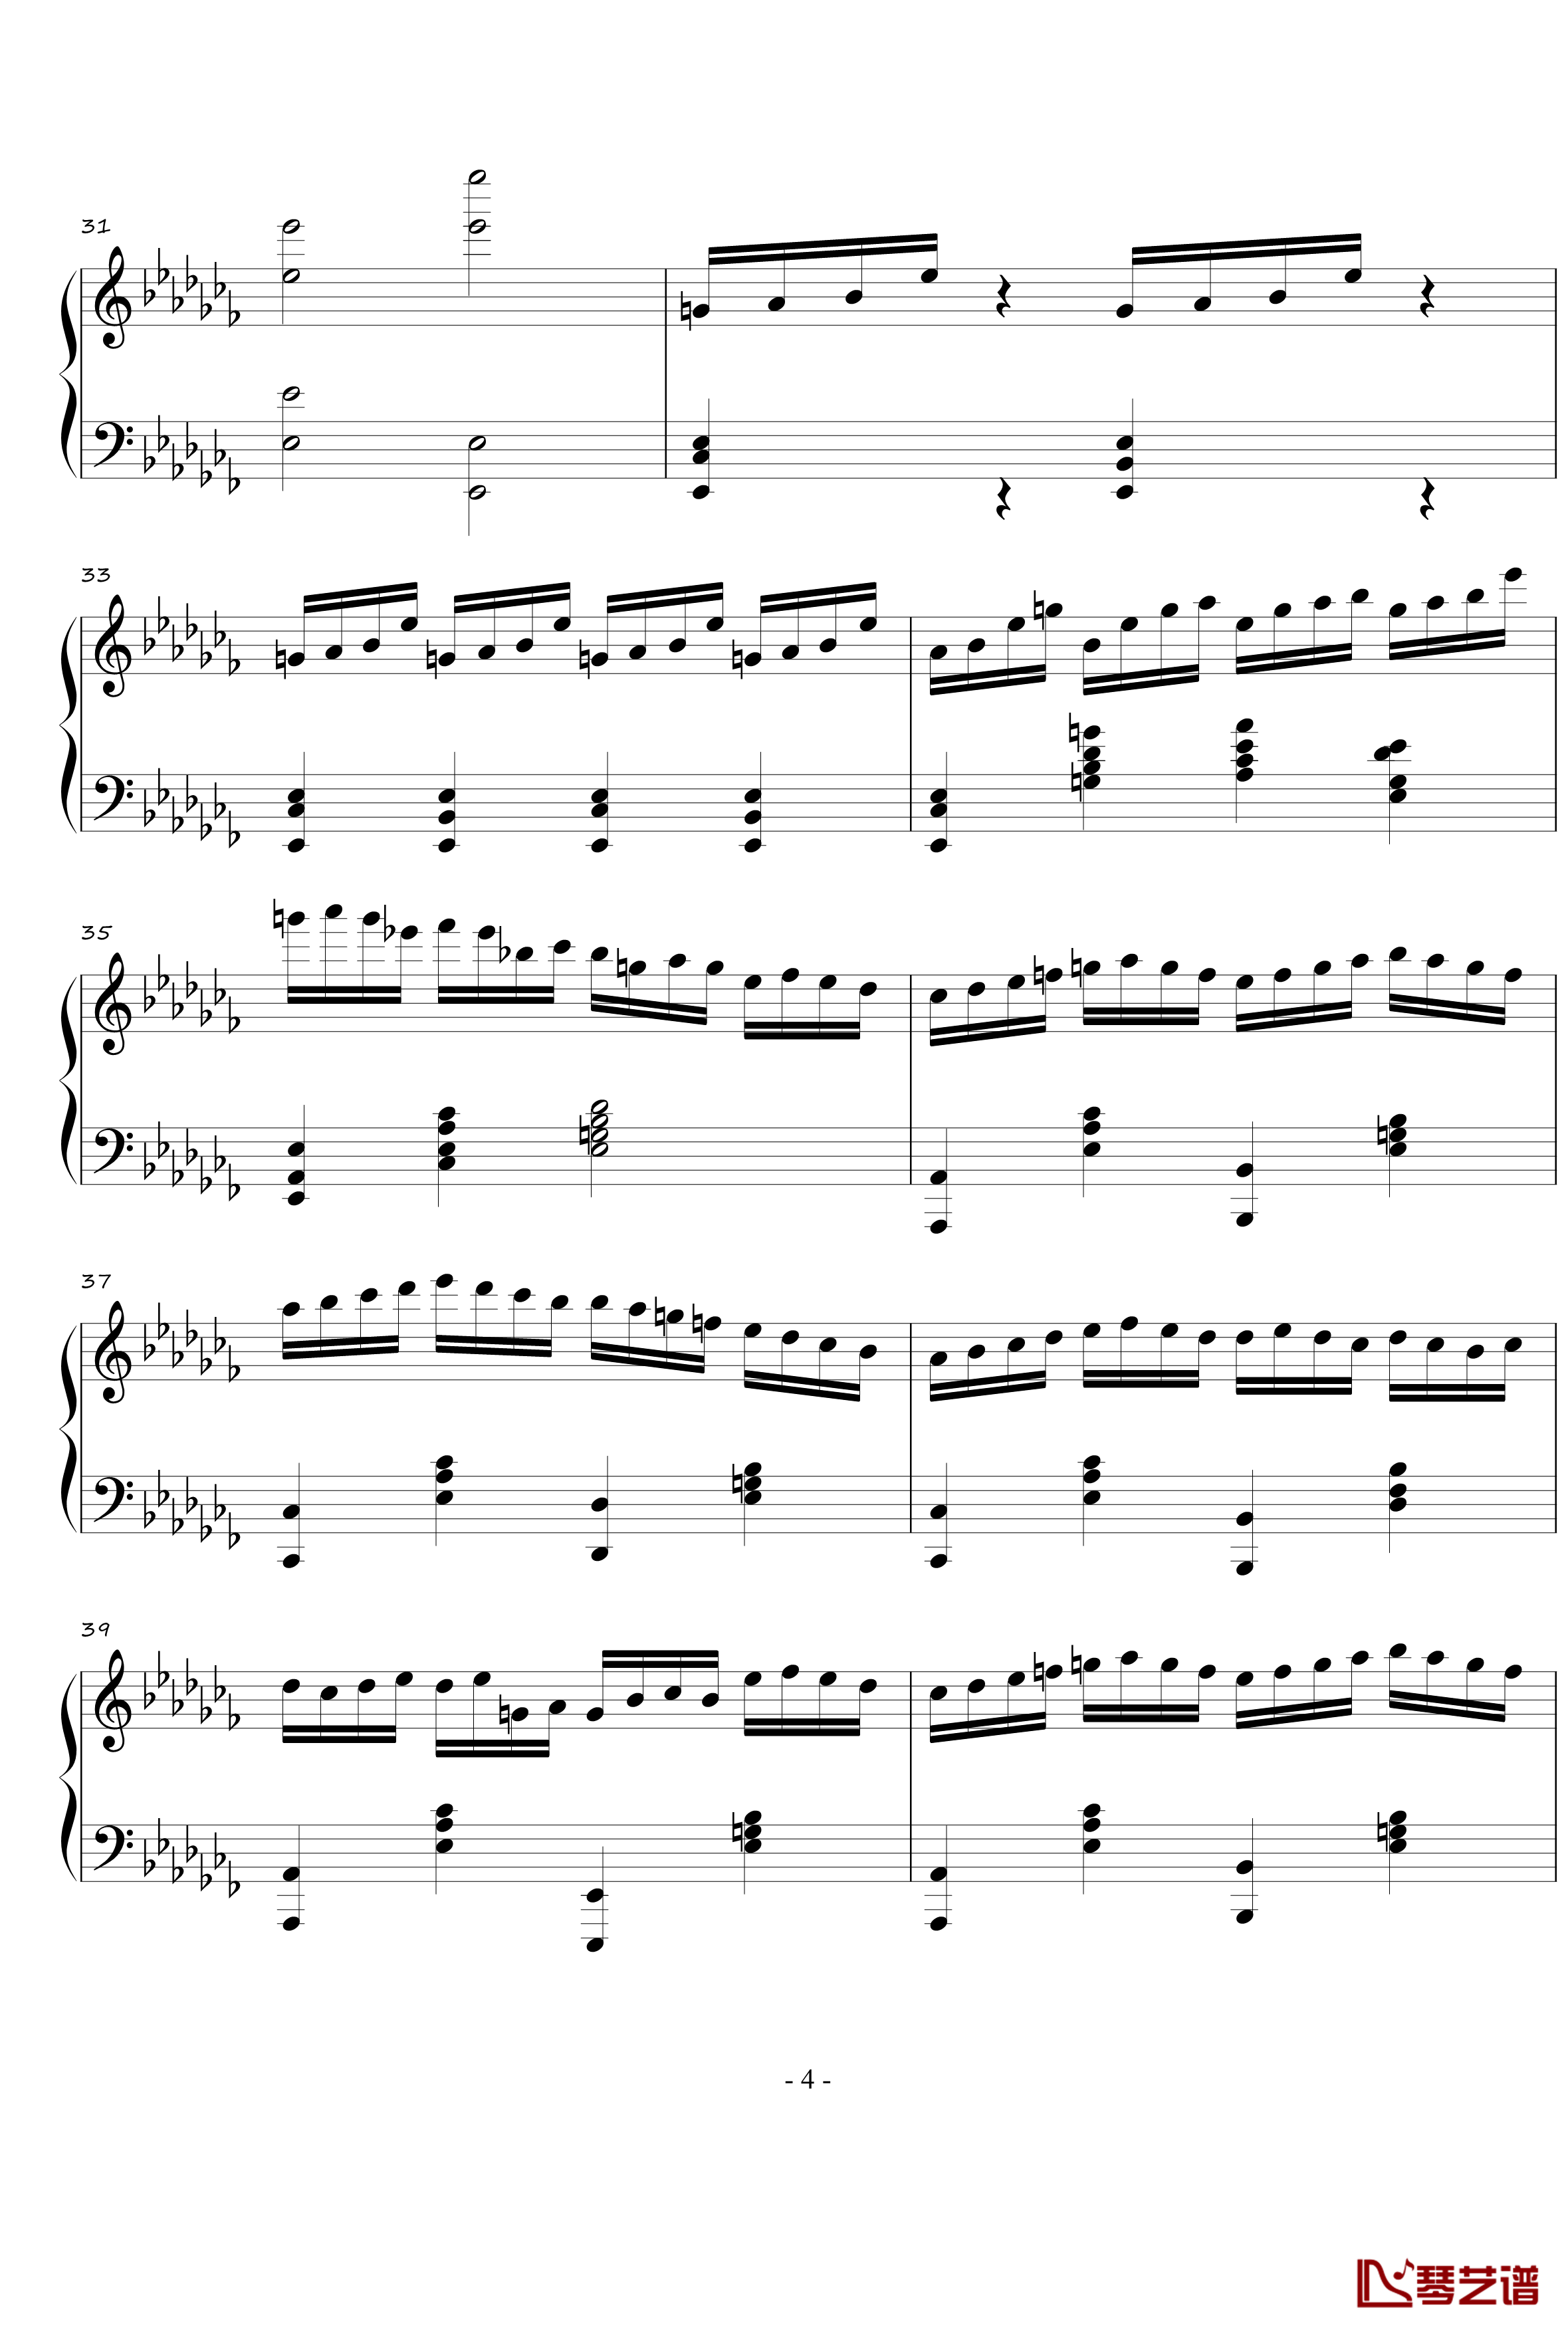 火星音阶练习曲钢琴谱-Op.2 No.1-火星先生4